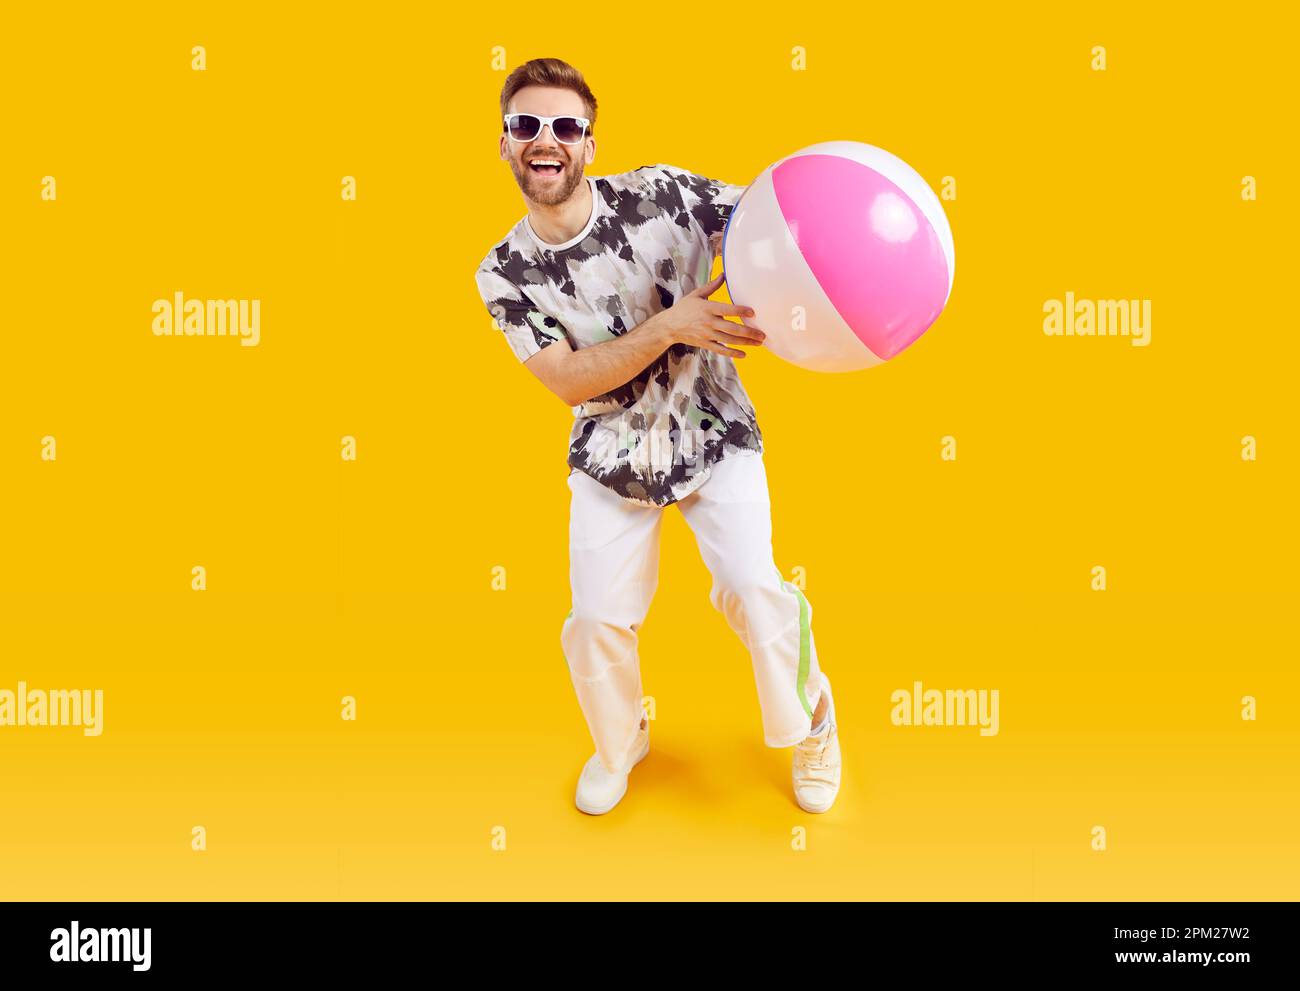 Sourire joyeux gars dans des lunettes de soleil tenant ballon gonflable de mer Banque D'Images